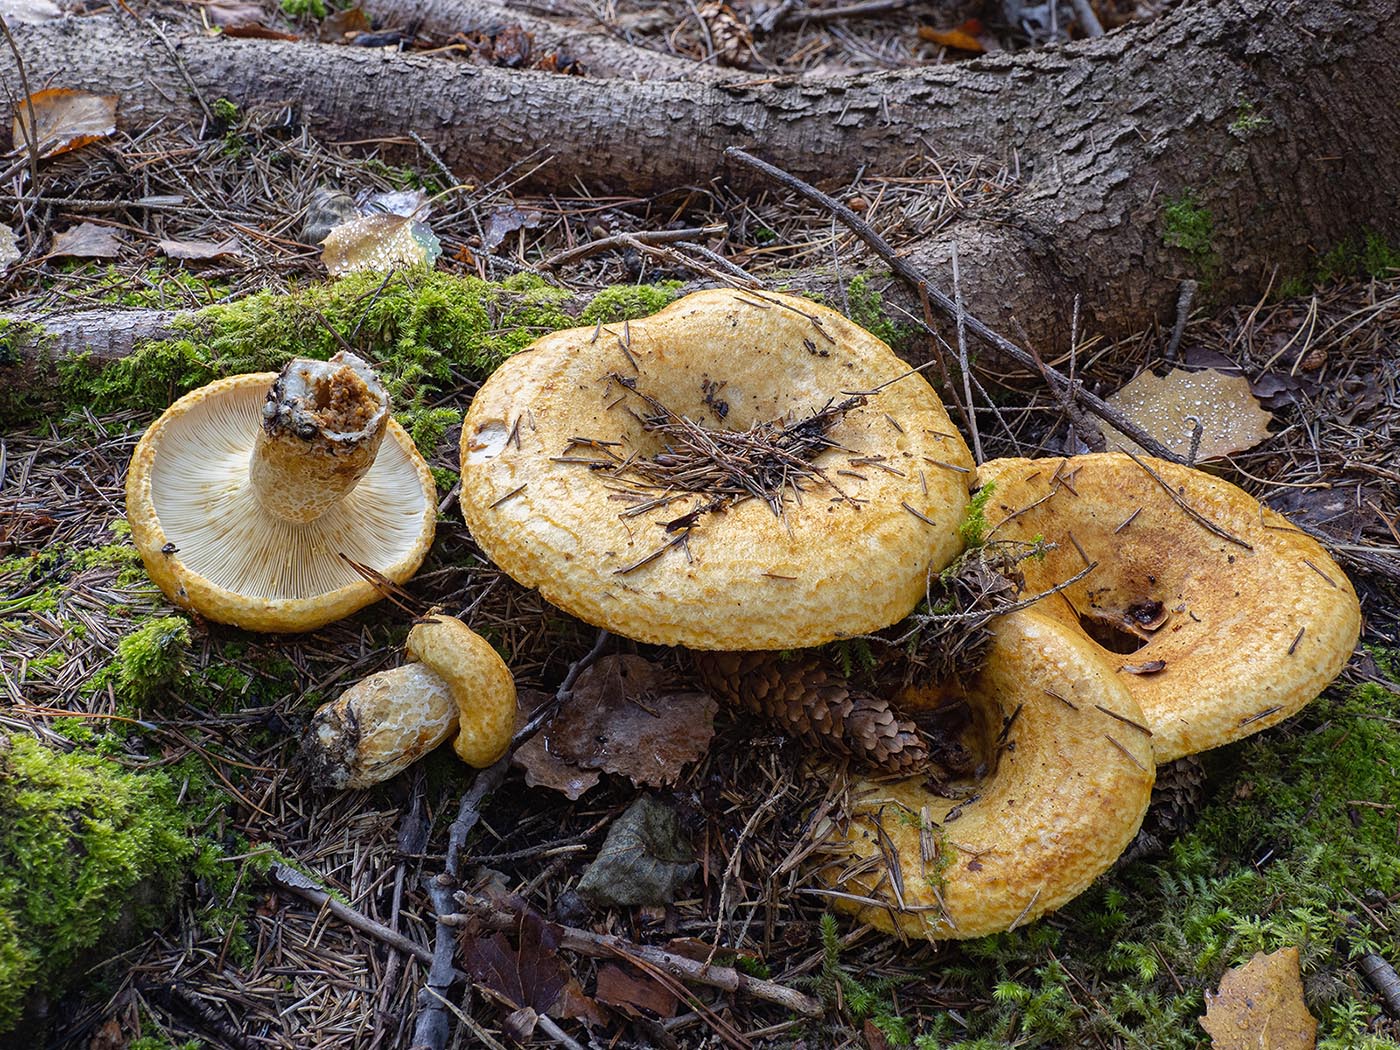 Груздь жёлтый (Lactarius scrobiculatus)Груздь жёлтый (Lactarius scrobiculatus) в еловом лесу. Природный парк G?rv?ln, Стокгольм, октябрь 2020 года. Автор фото: Сутормина Марина